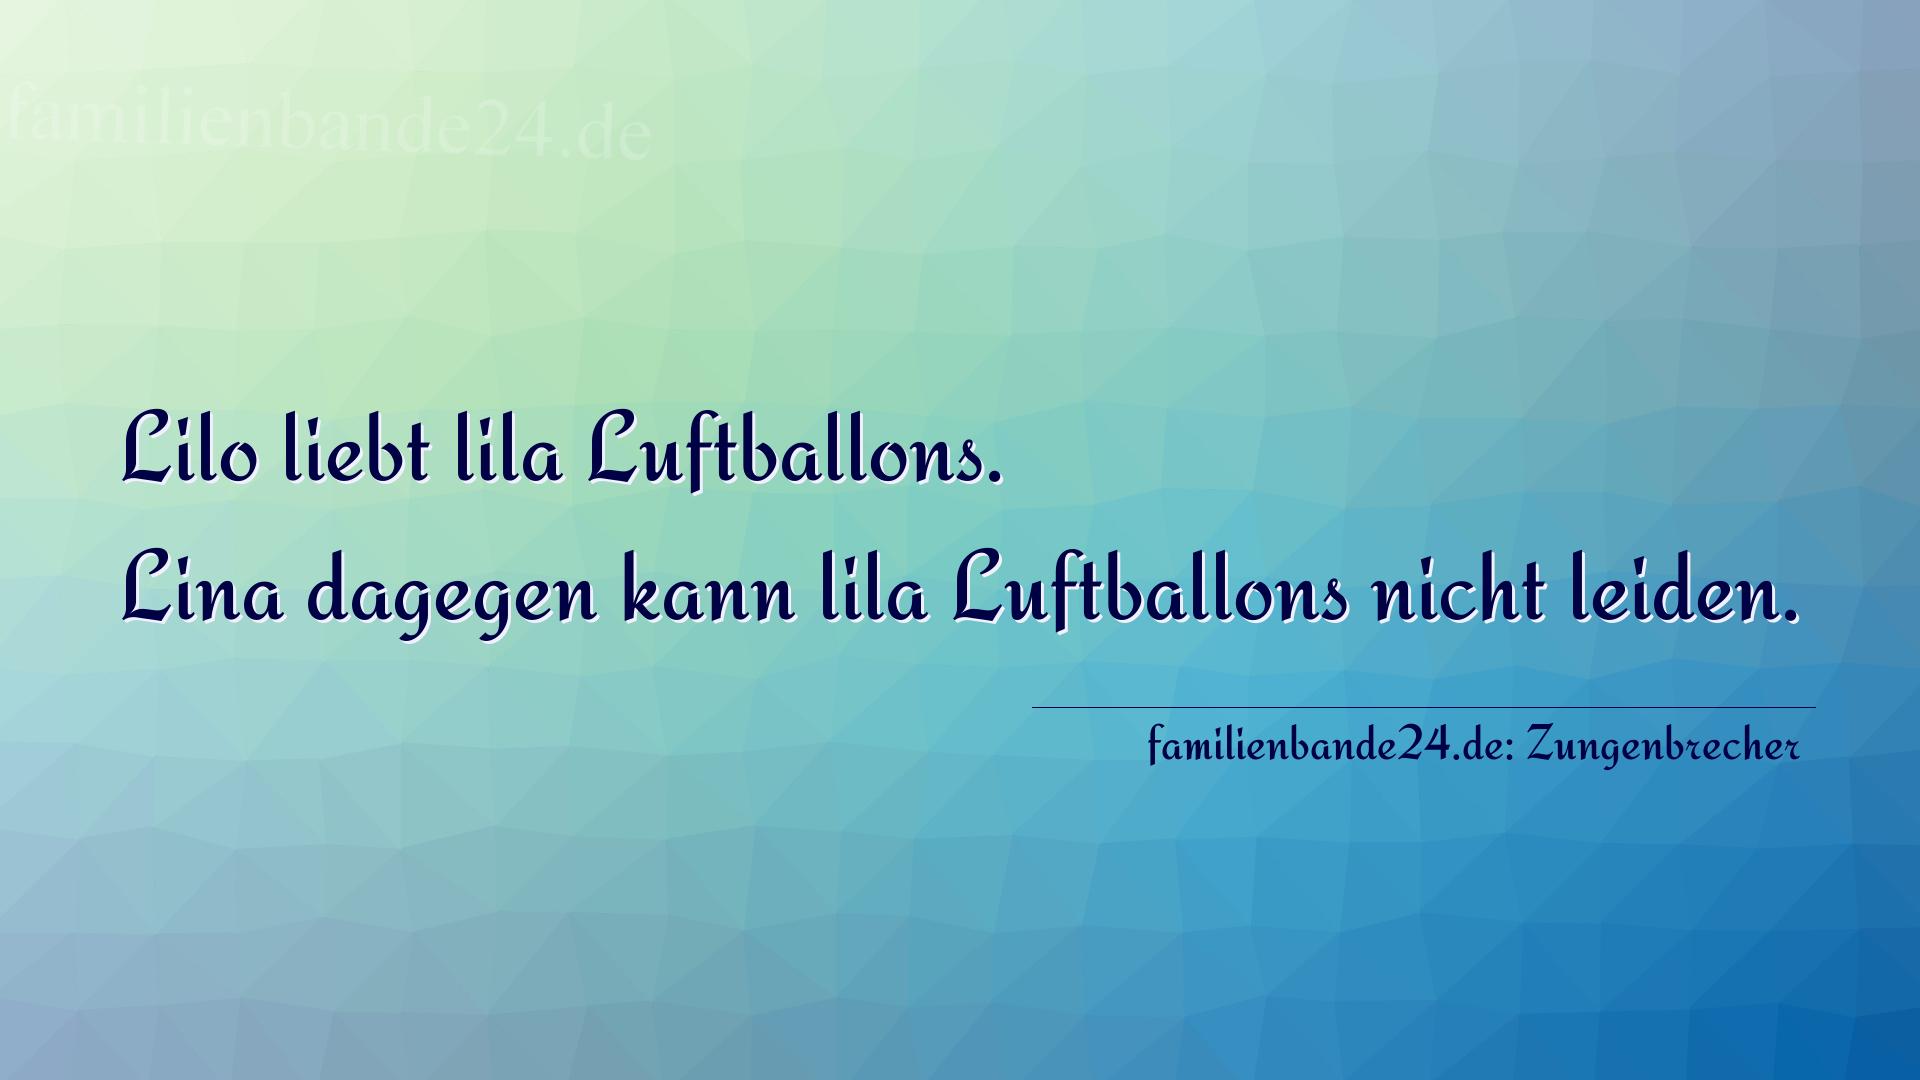 Zungenbrecher Nr. 778: Lilo liebt lila Luftballons. Lina dagegen kann lila Luftba [...]